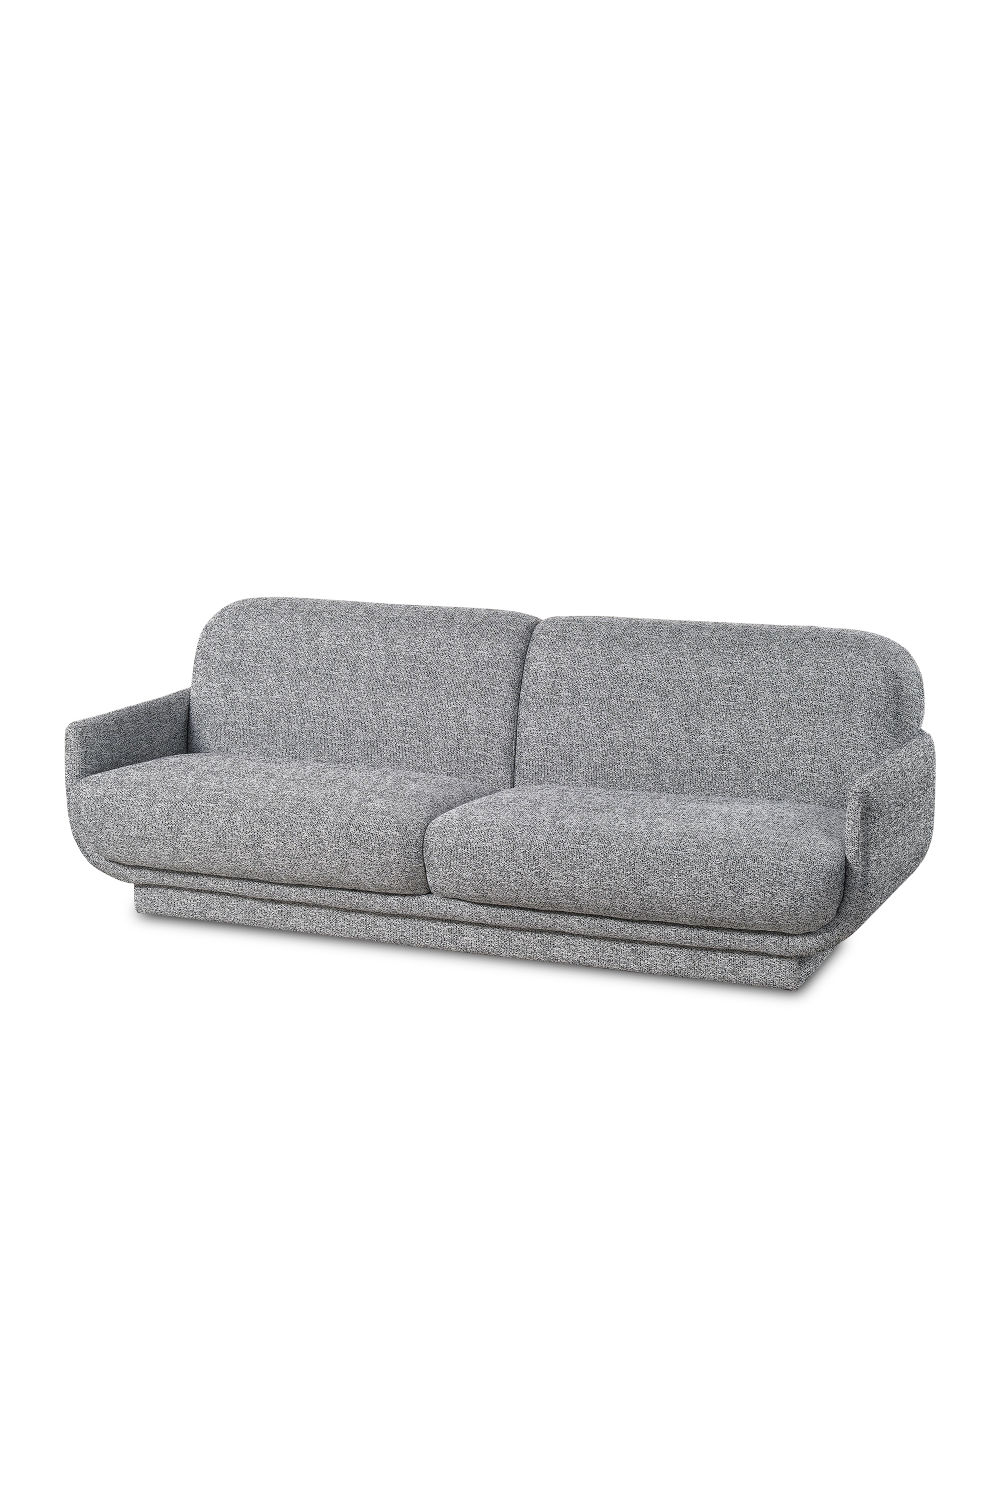 Gray Modern Sofa | Liang & Eimil Charles | Oroa.com